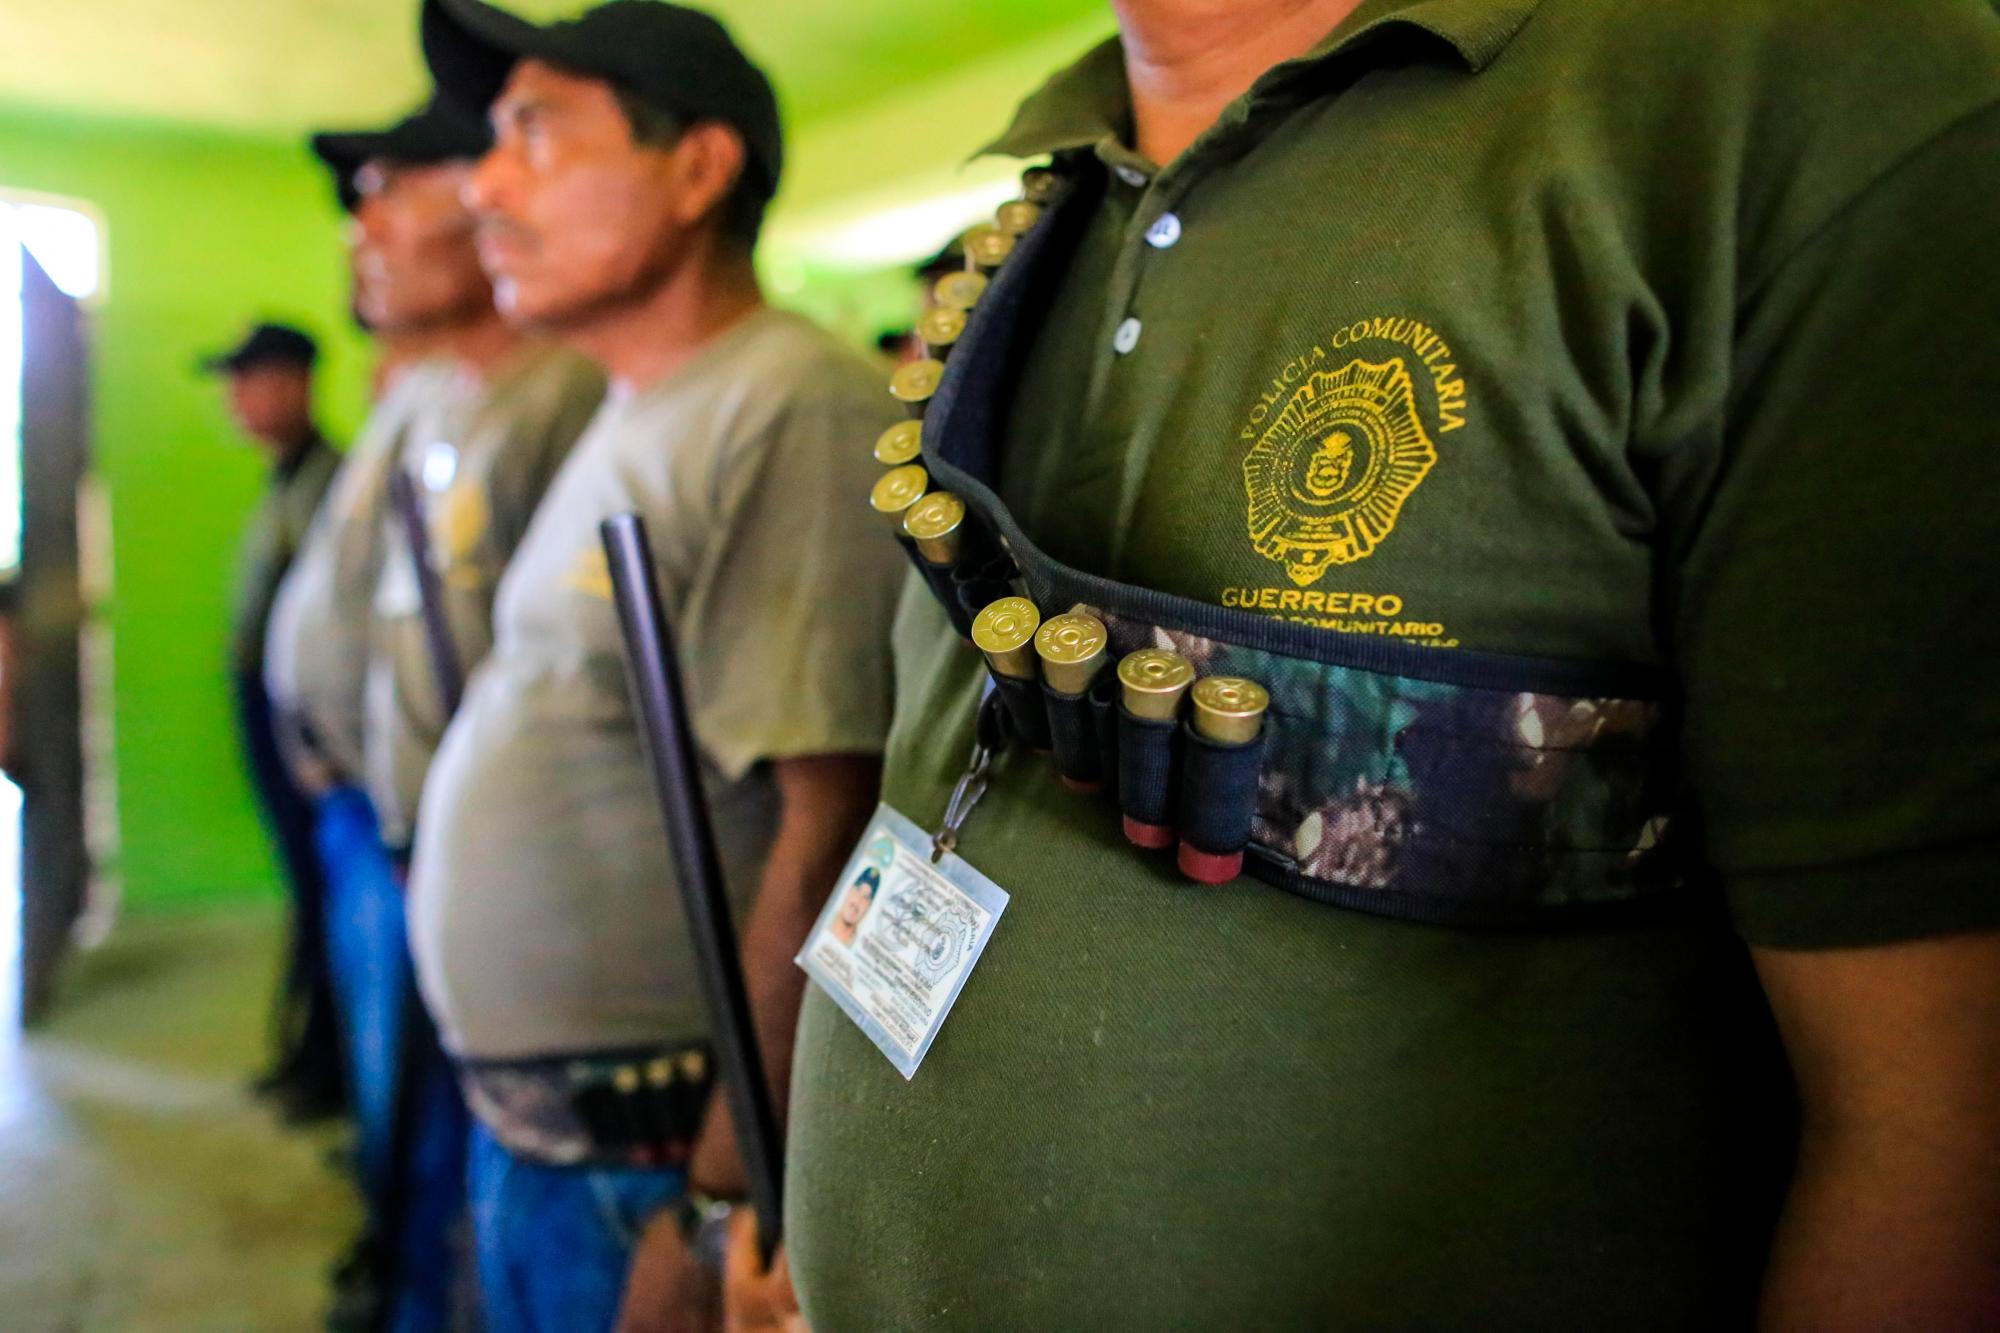 Guardias comunitarios del estado de Guerrero (México)